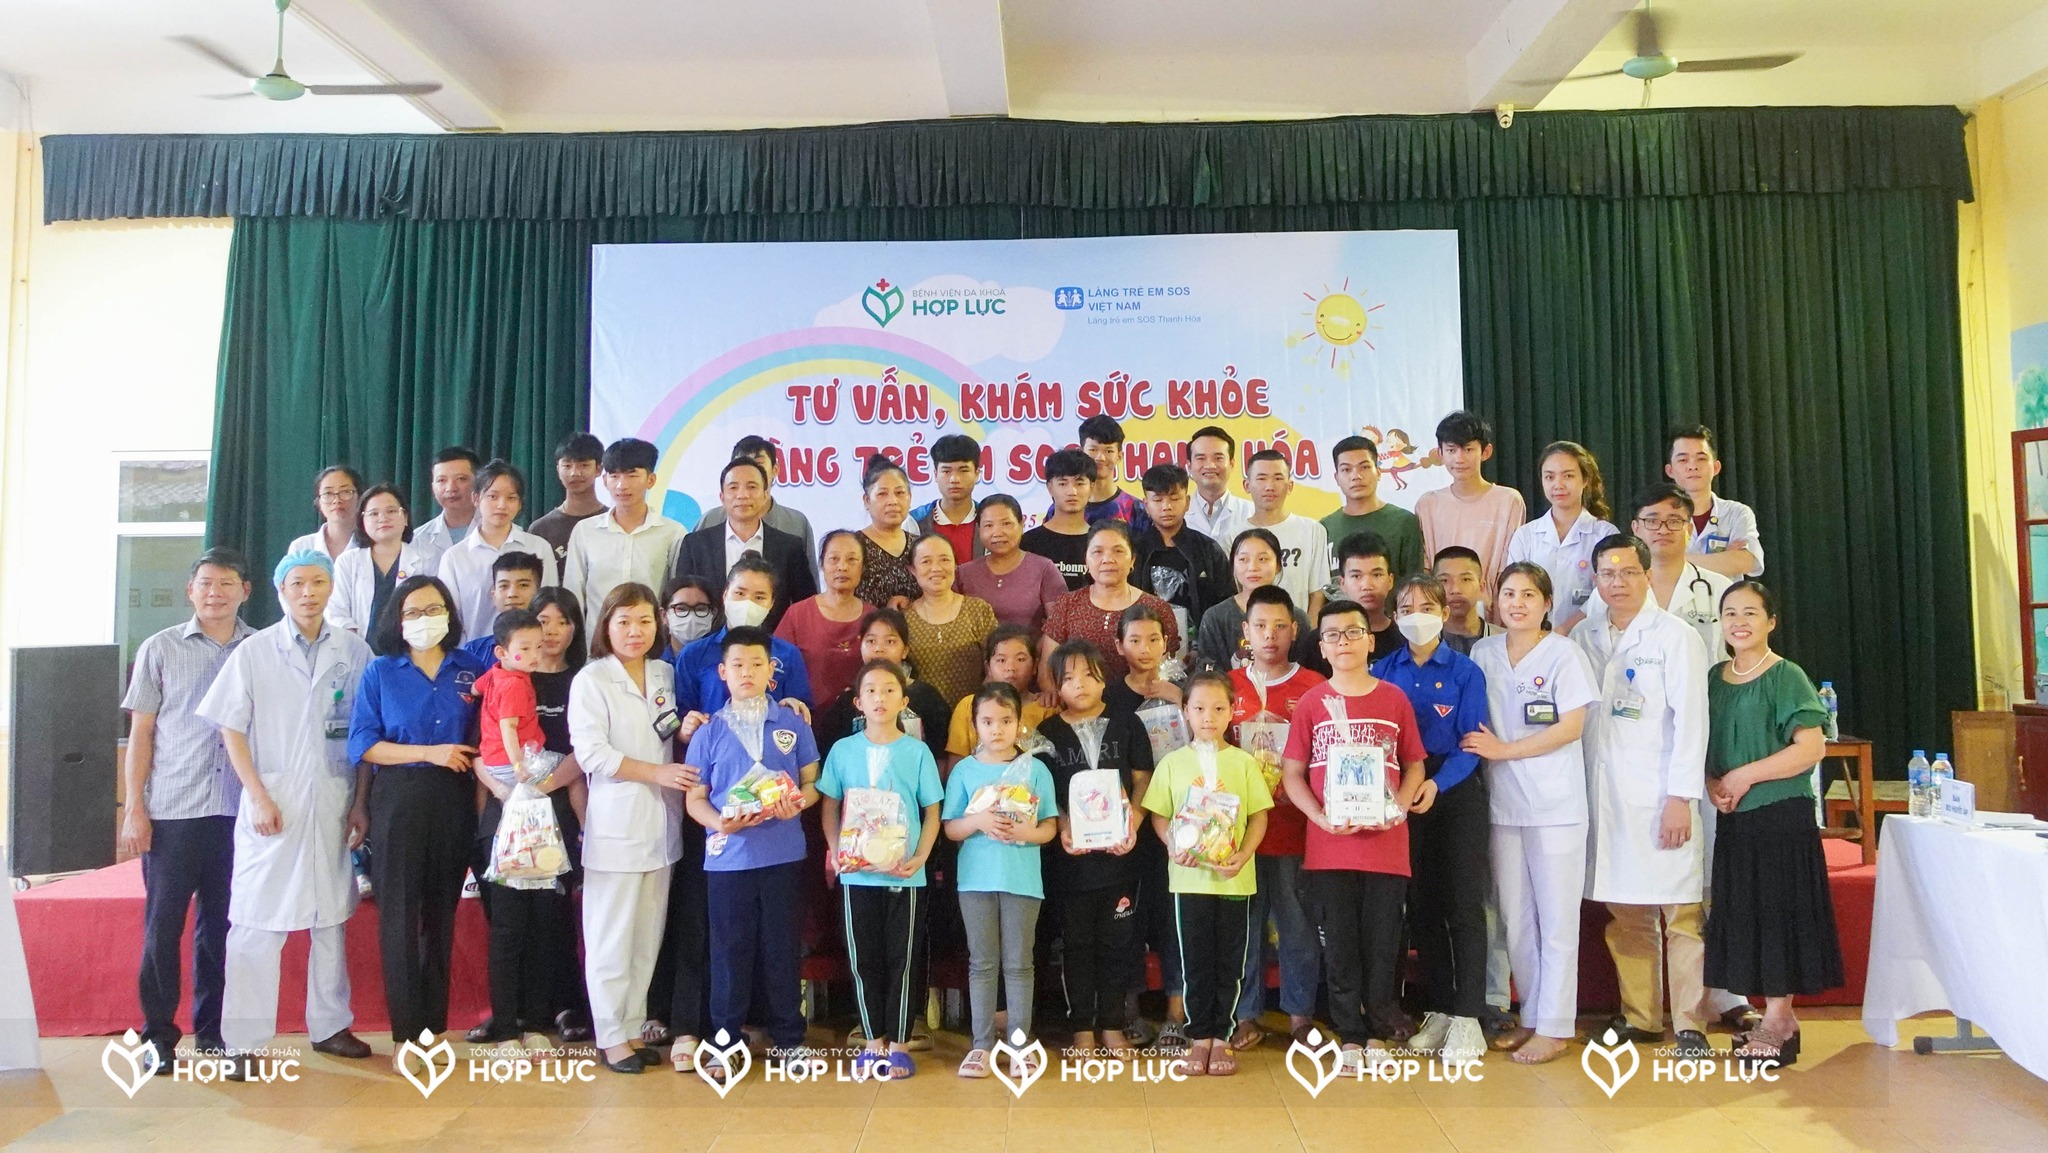 Bệnh viện Đa khoa Hợp Lực tổ chức tư vấn, khám sức khỏe cho làng trẻ em SOS Thanh Hóa